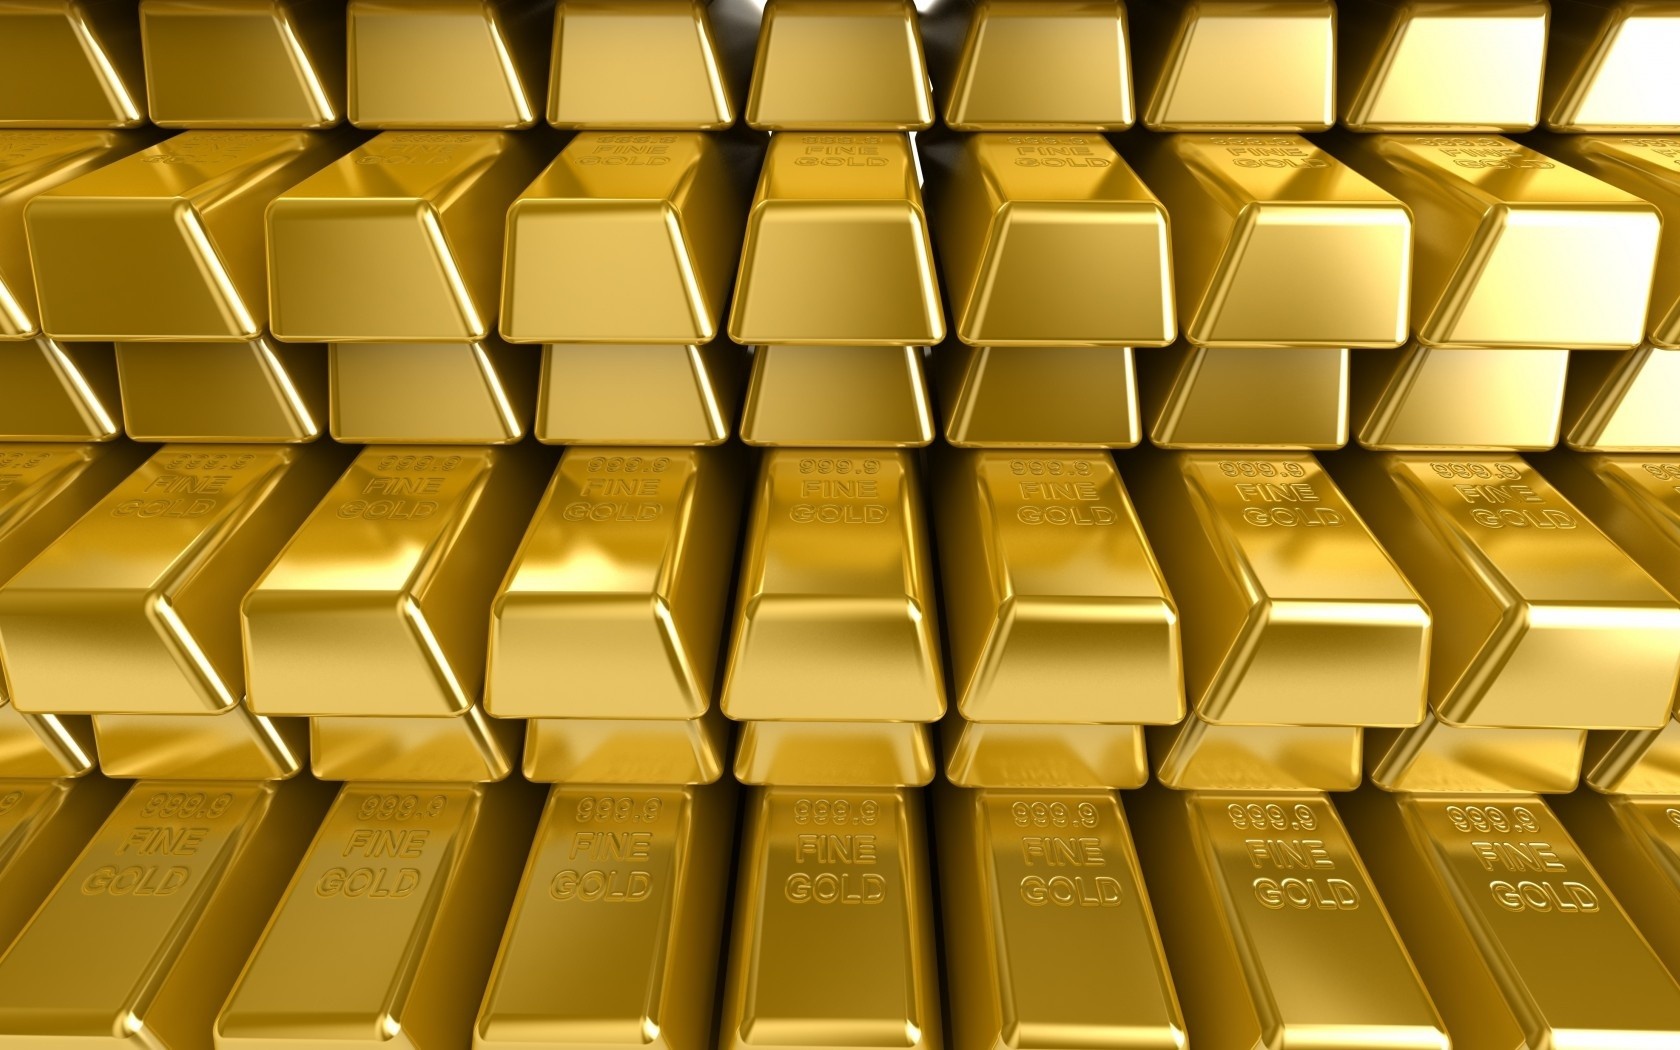 Еуразиялық банк халыққа алтын құймаларын сата бастады